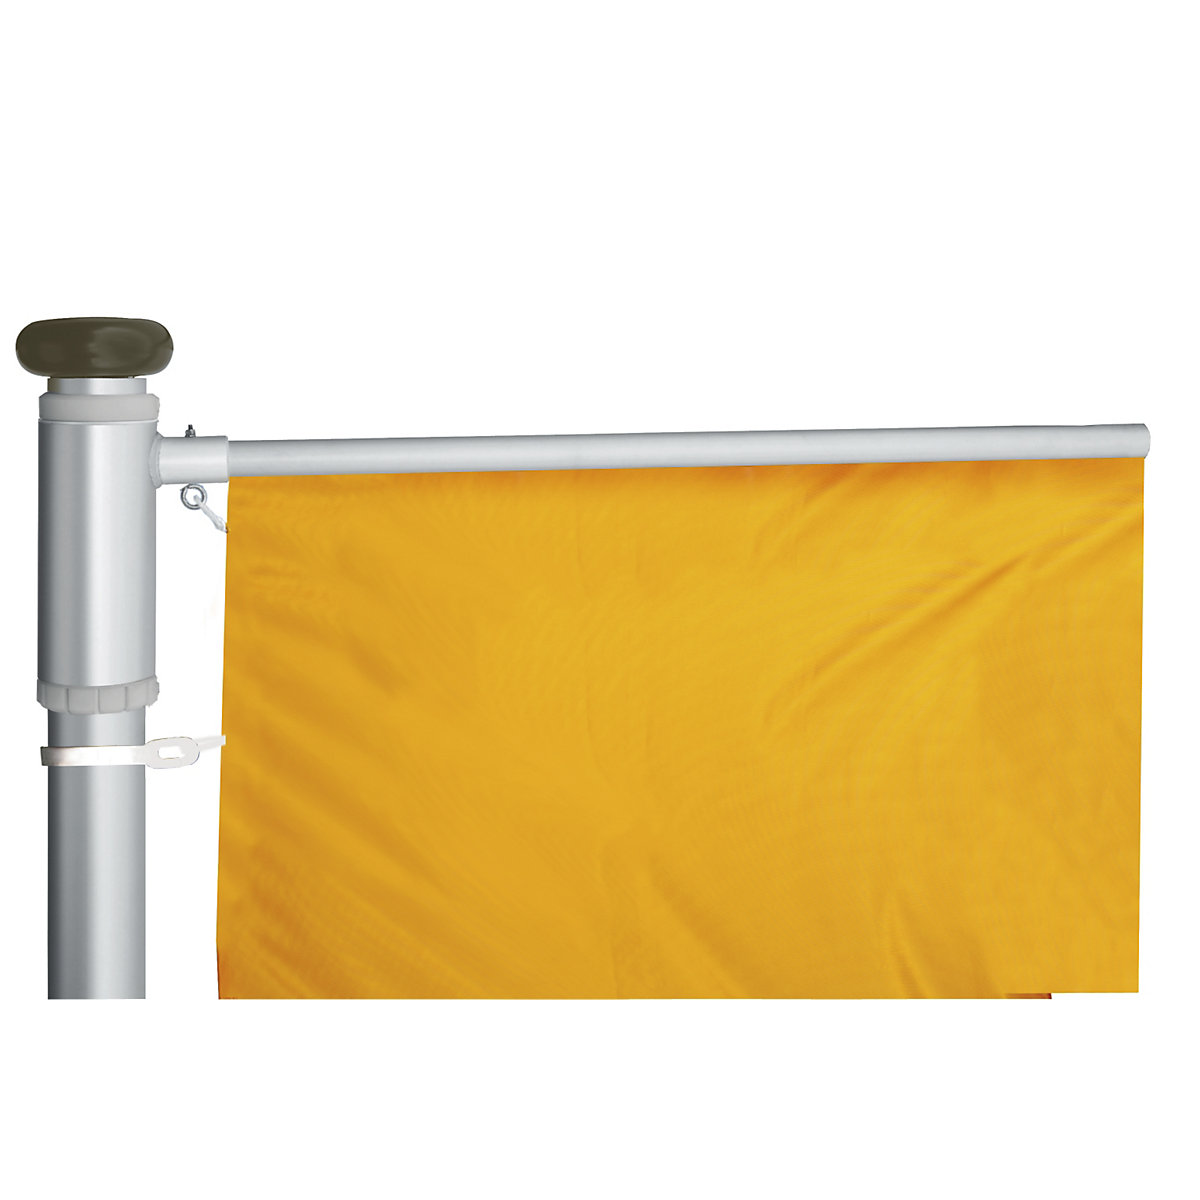 Mannus – Catarg din aluminiu pentru steaguri, PRESTIGE (Imagine produs 7)